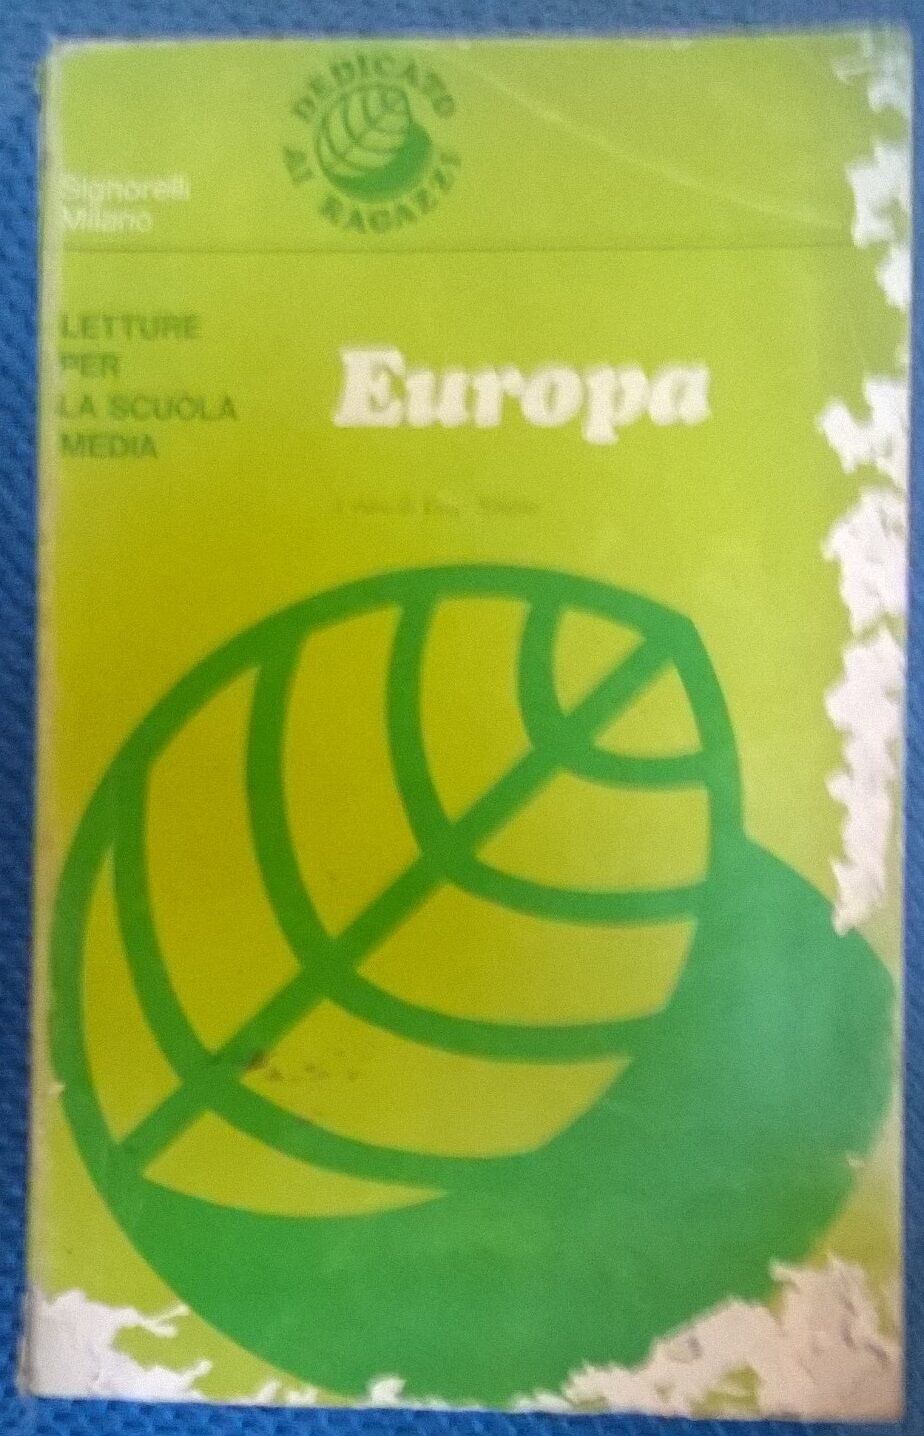 Europa - Luigi Simone - Letture per le scuole medie-  Signorelli, 1970 - L 